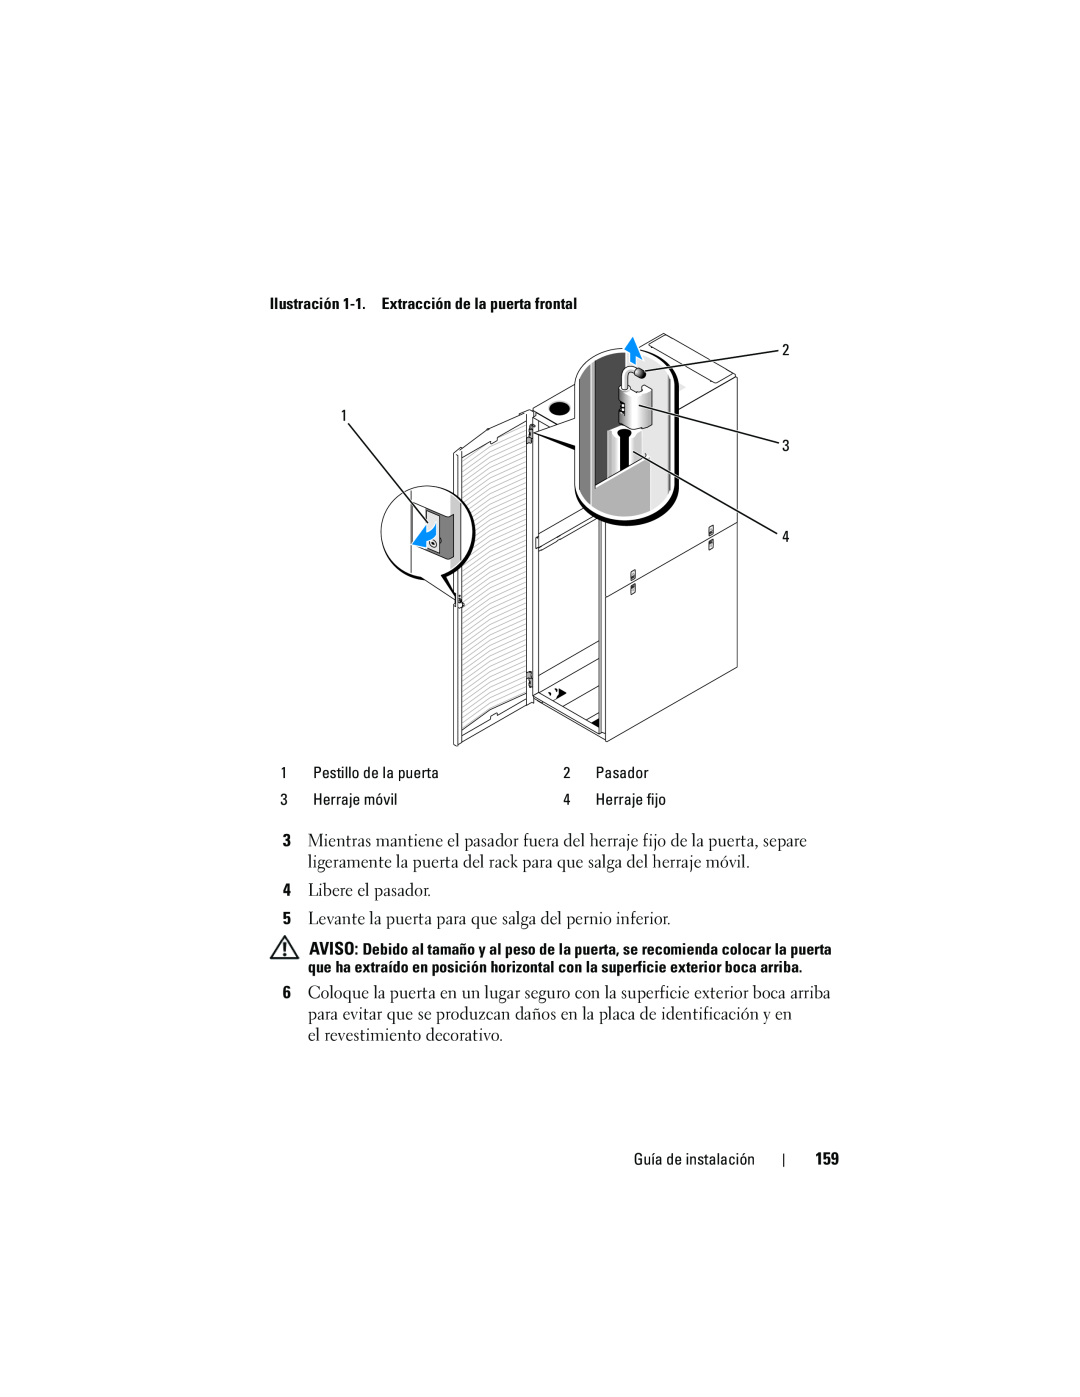 Dell 4220 manual Ilustración 1-1. Extracción de la puerta frontal, Pestillo de la puerta, Pasador, Herraje móvil 